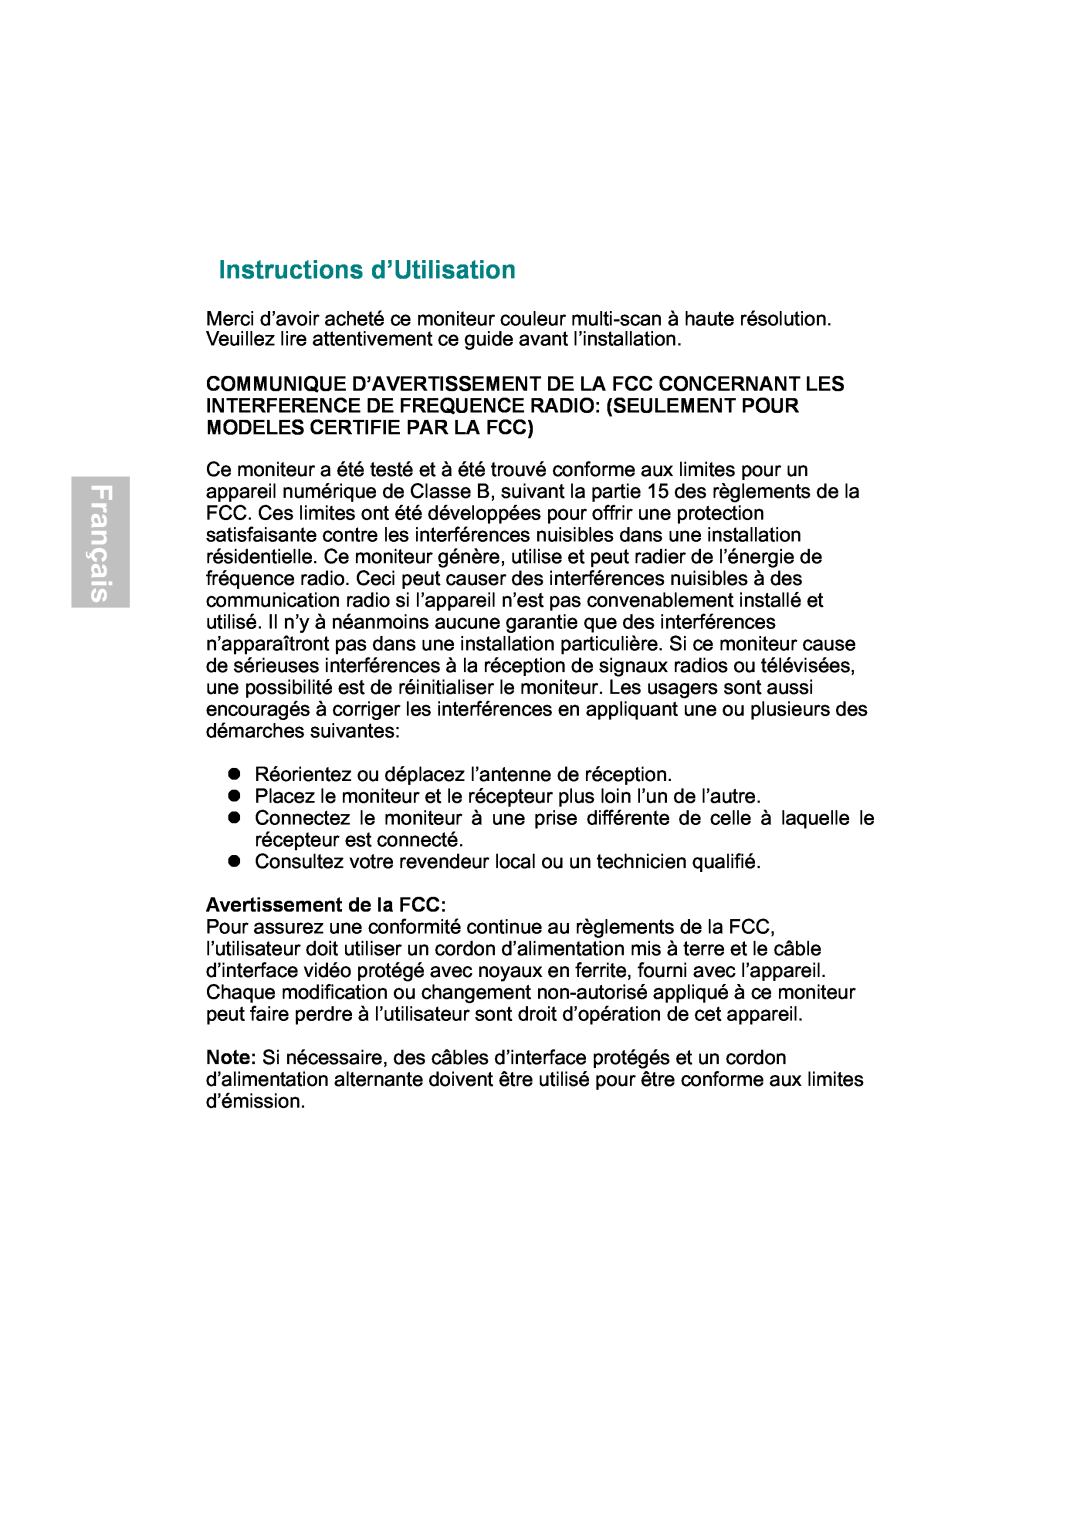 AOC 919Sw-1 manual Français, Instructions d’Utilisation, Avertissement de la FCC 